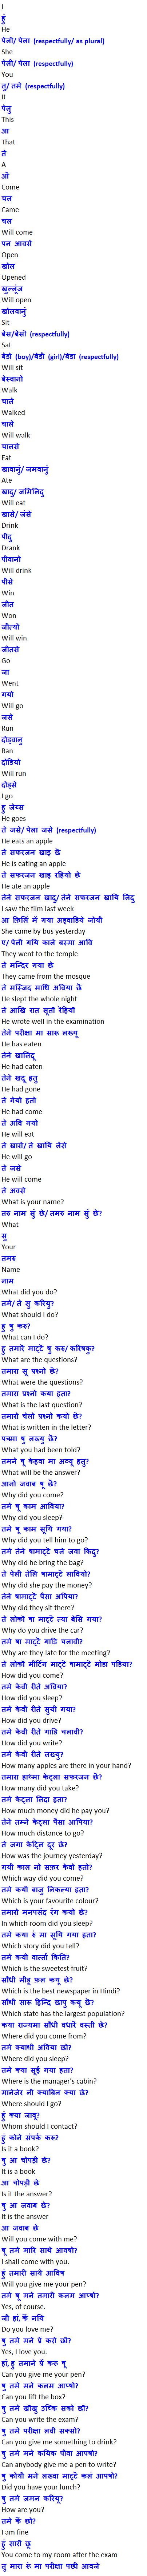 Learn Gujarati through Hindi